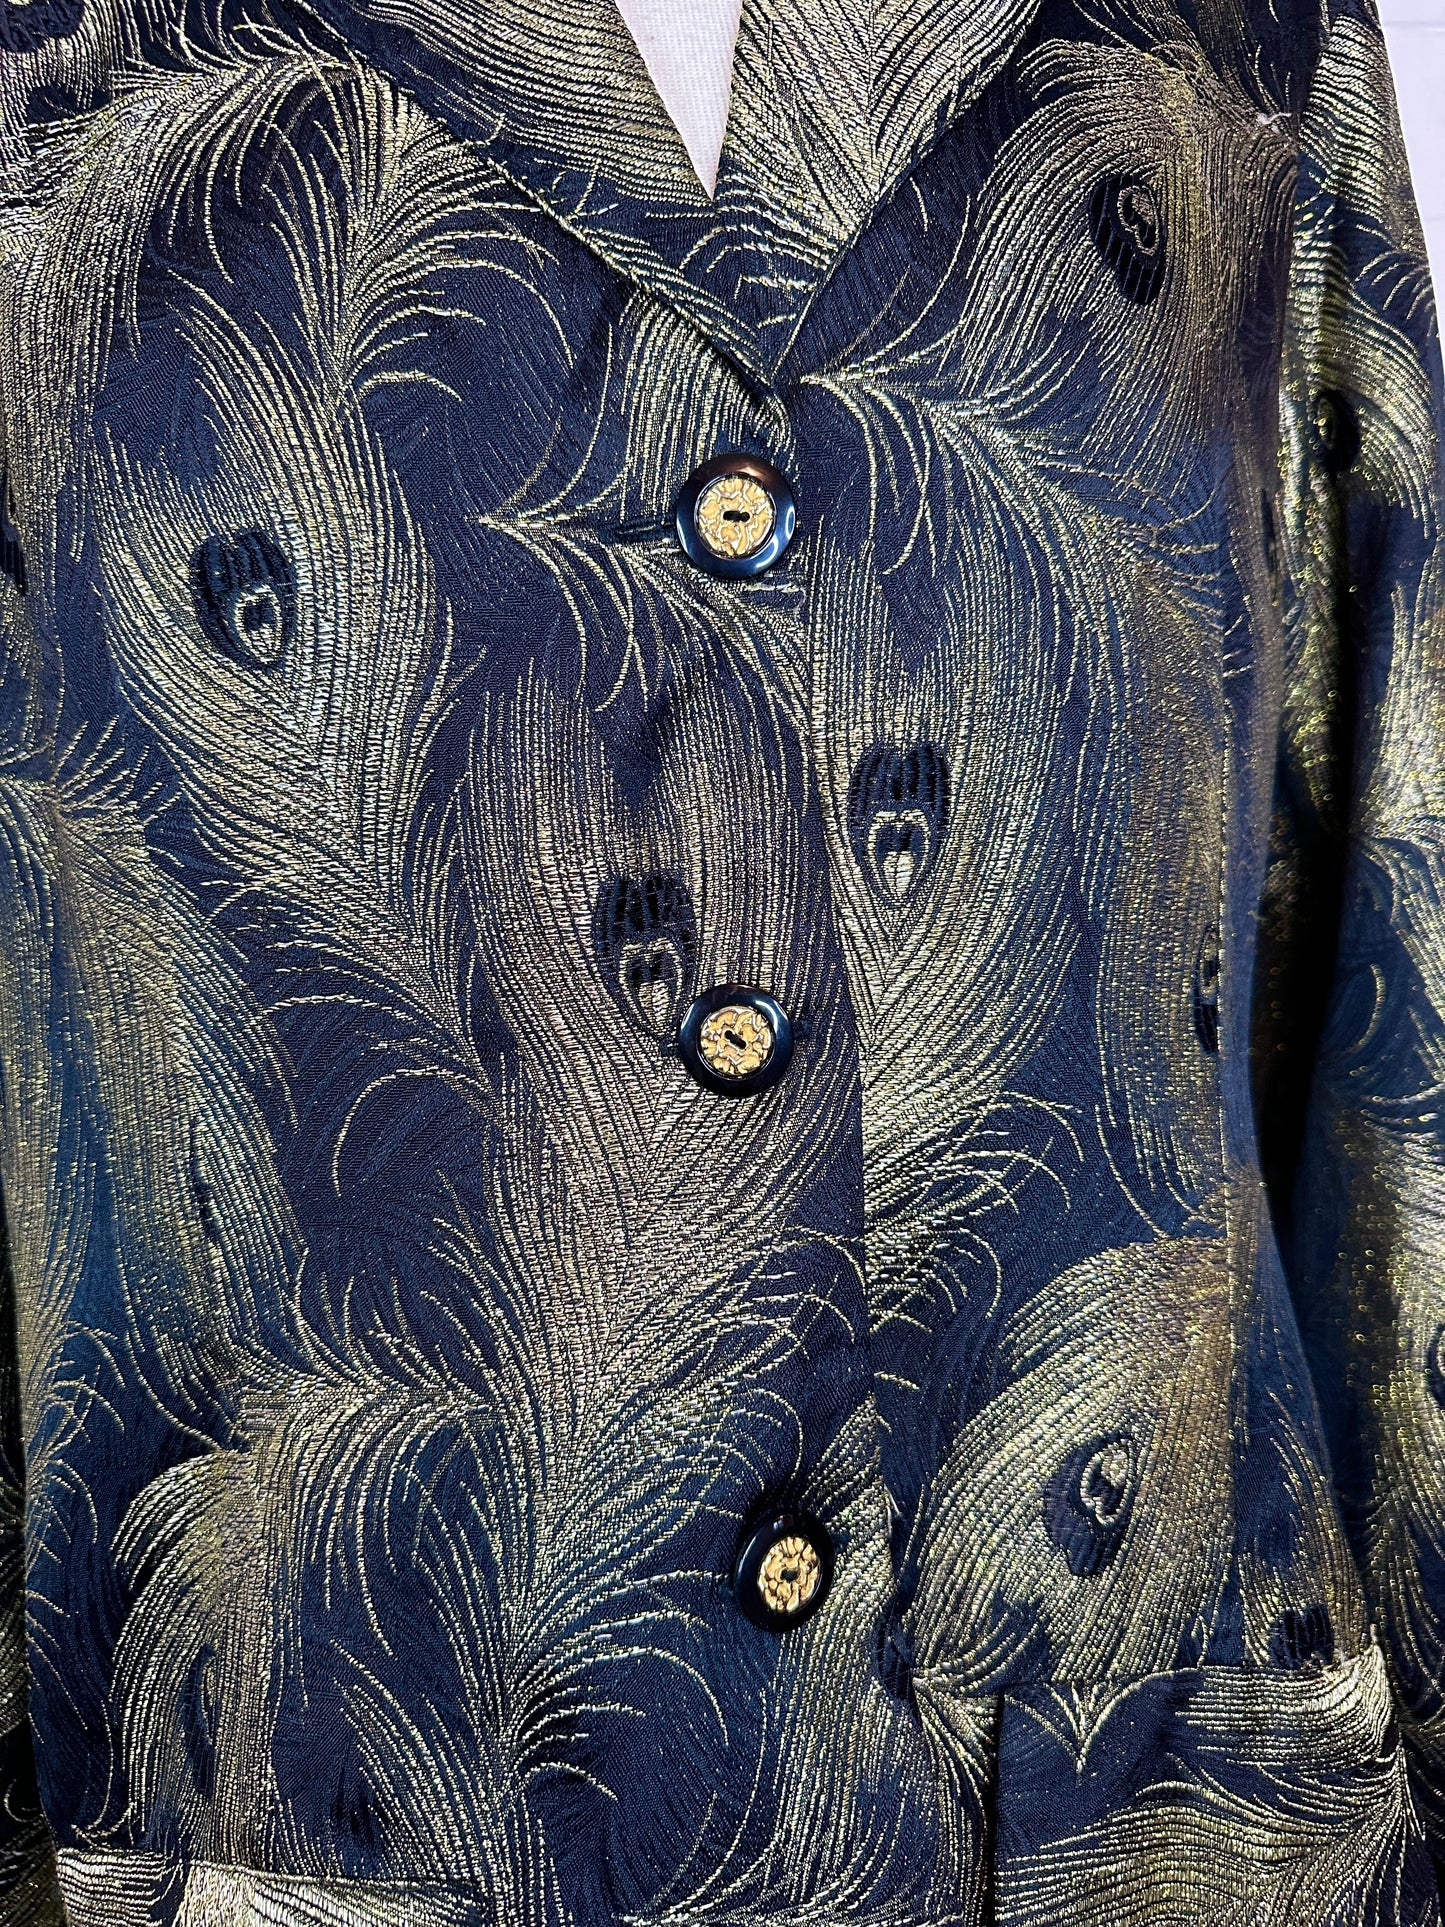 1980's Metallic Peacock Brocade Women's Blazer Jacket (XL)